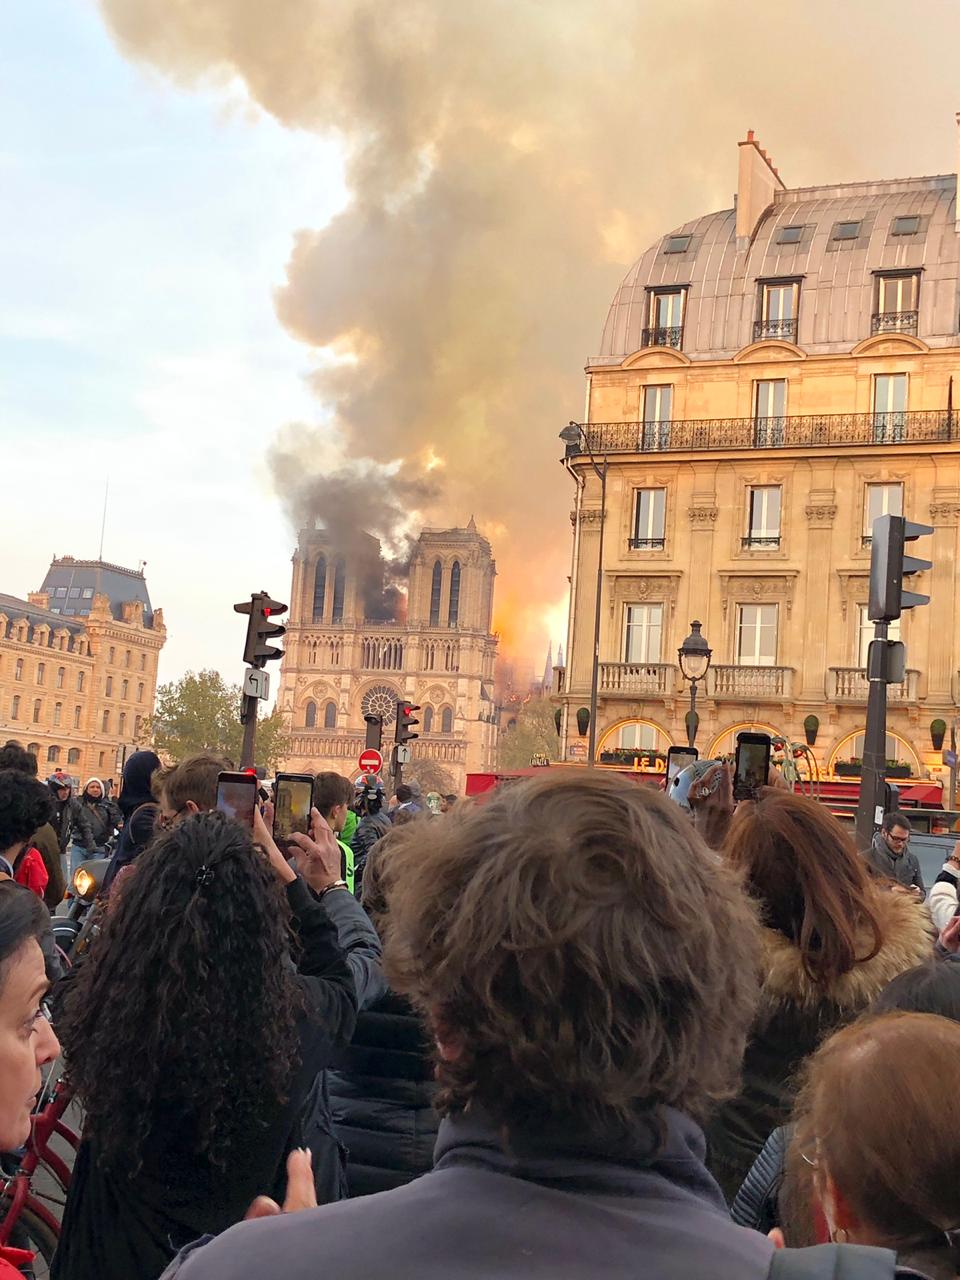 Incendio de Notre Dame de Paris, 15 de abril de 2019. | Imagen: Wikipedia